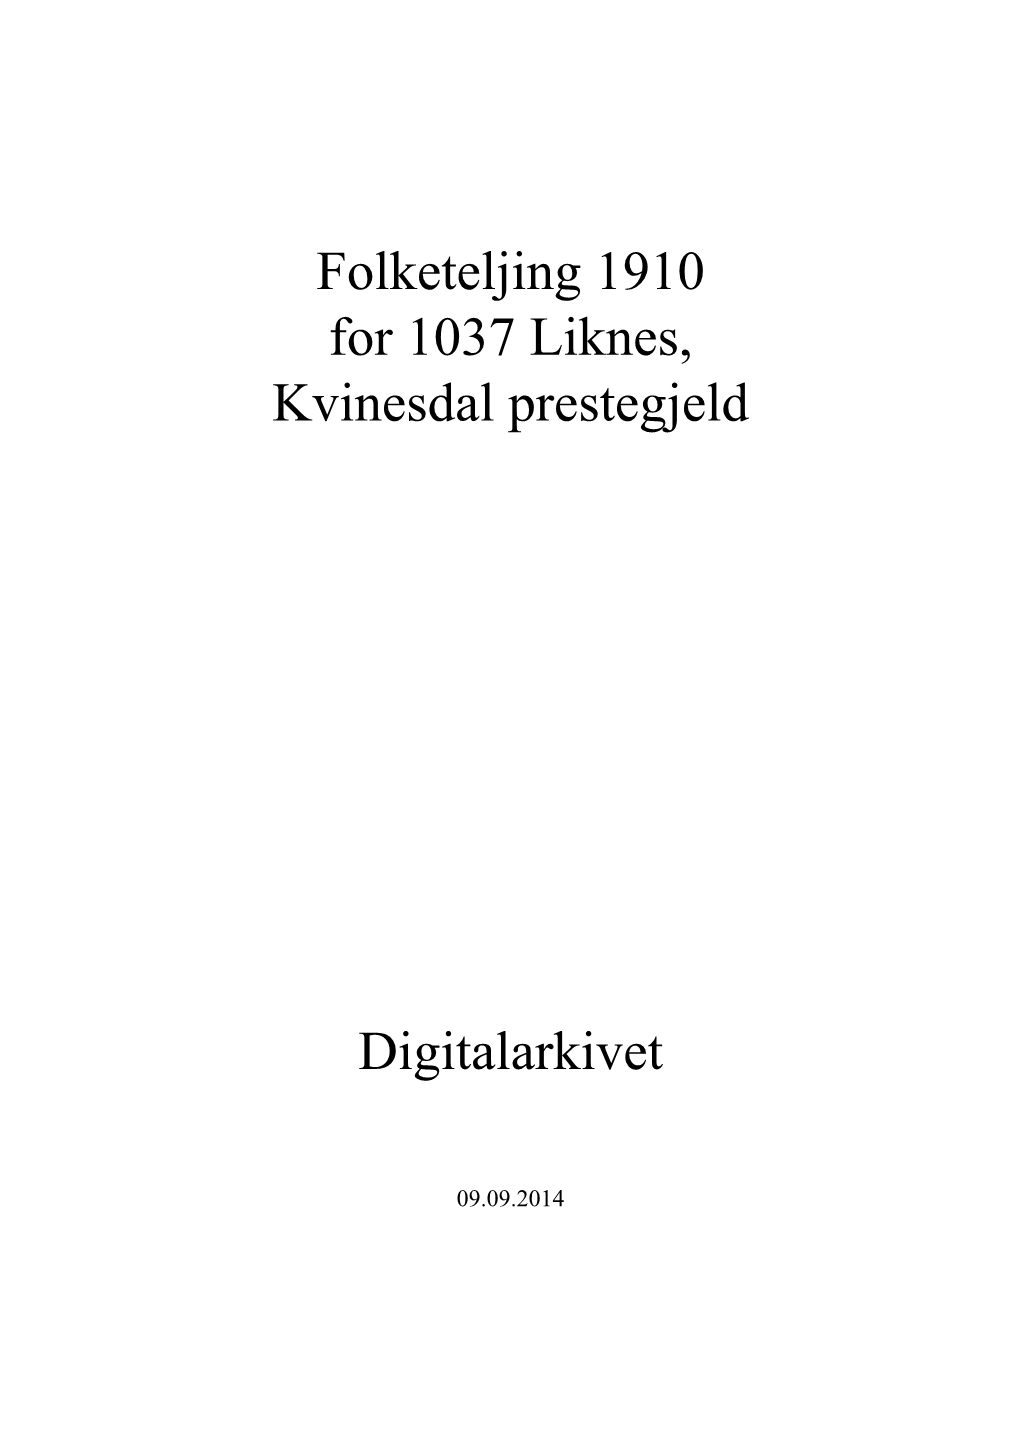 Folketeljing 1910 for 1037 Liknes, Kvinesdal Prestegjeld Digitalarkivet